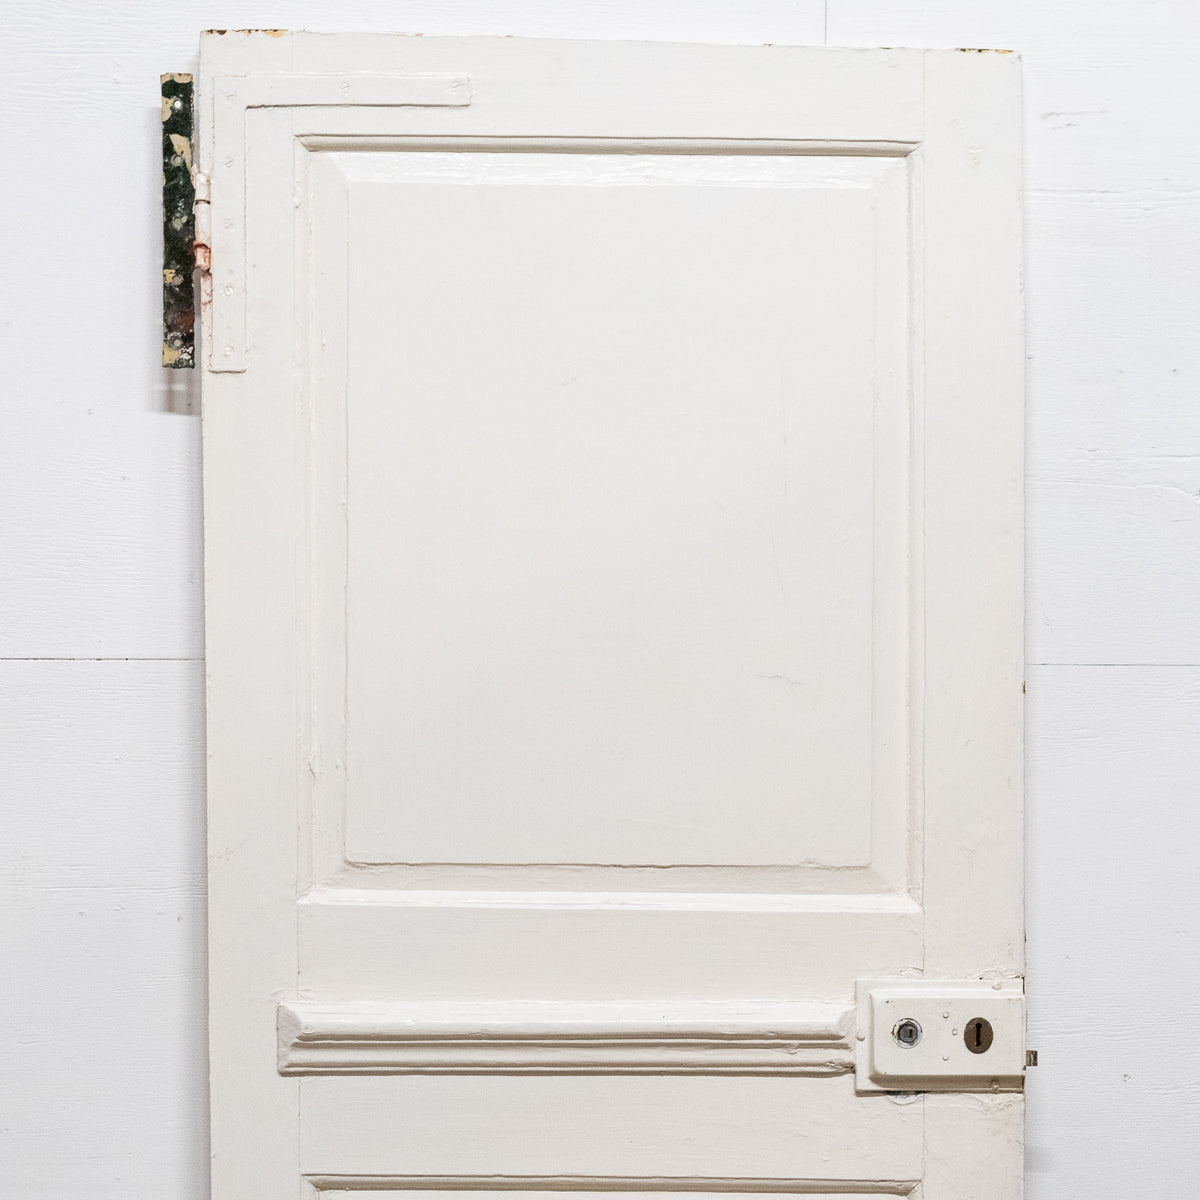 Antique Georgian 2 Panel Door - 178cm x 74cm | The Architectural Forum